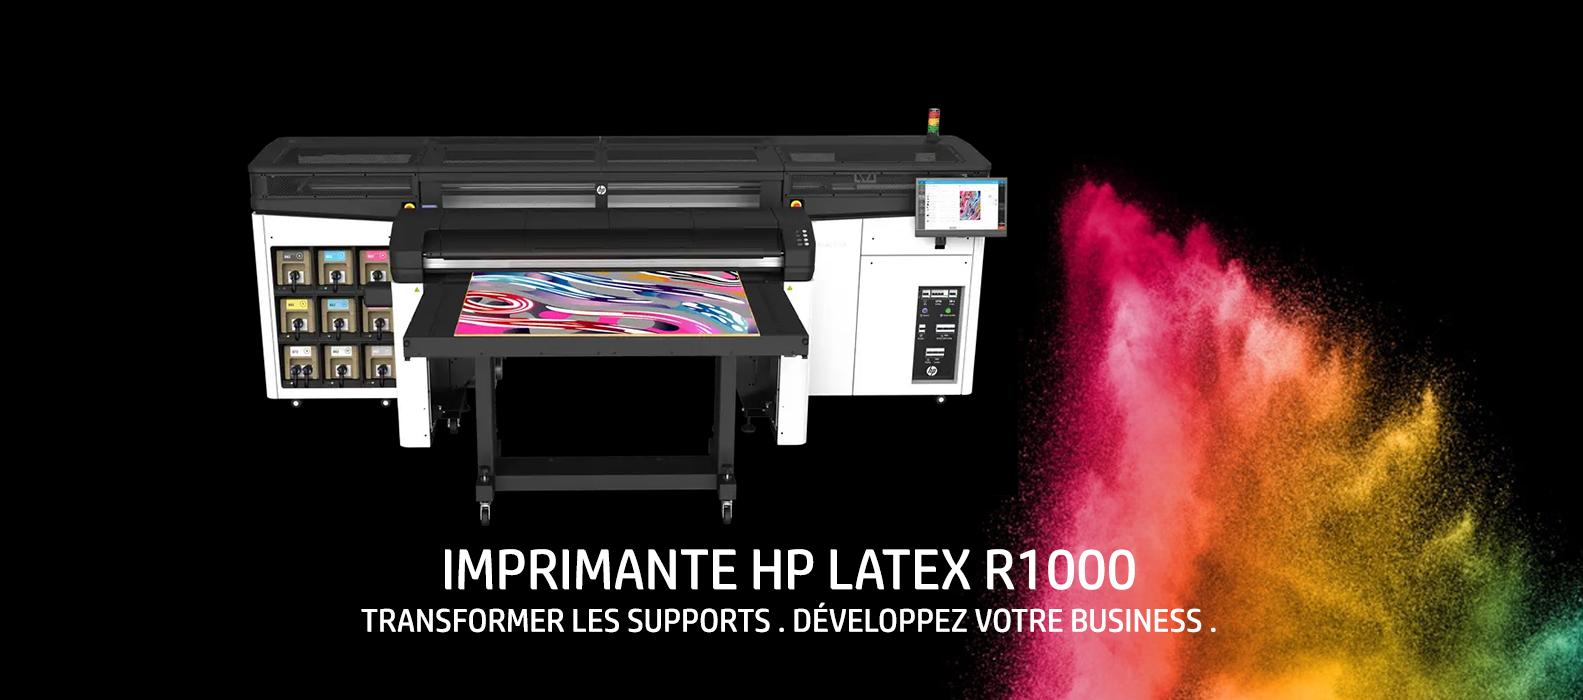 HP Latex R1000